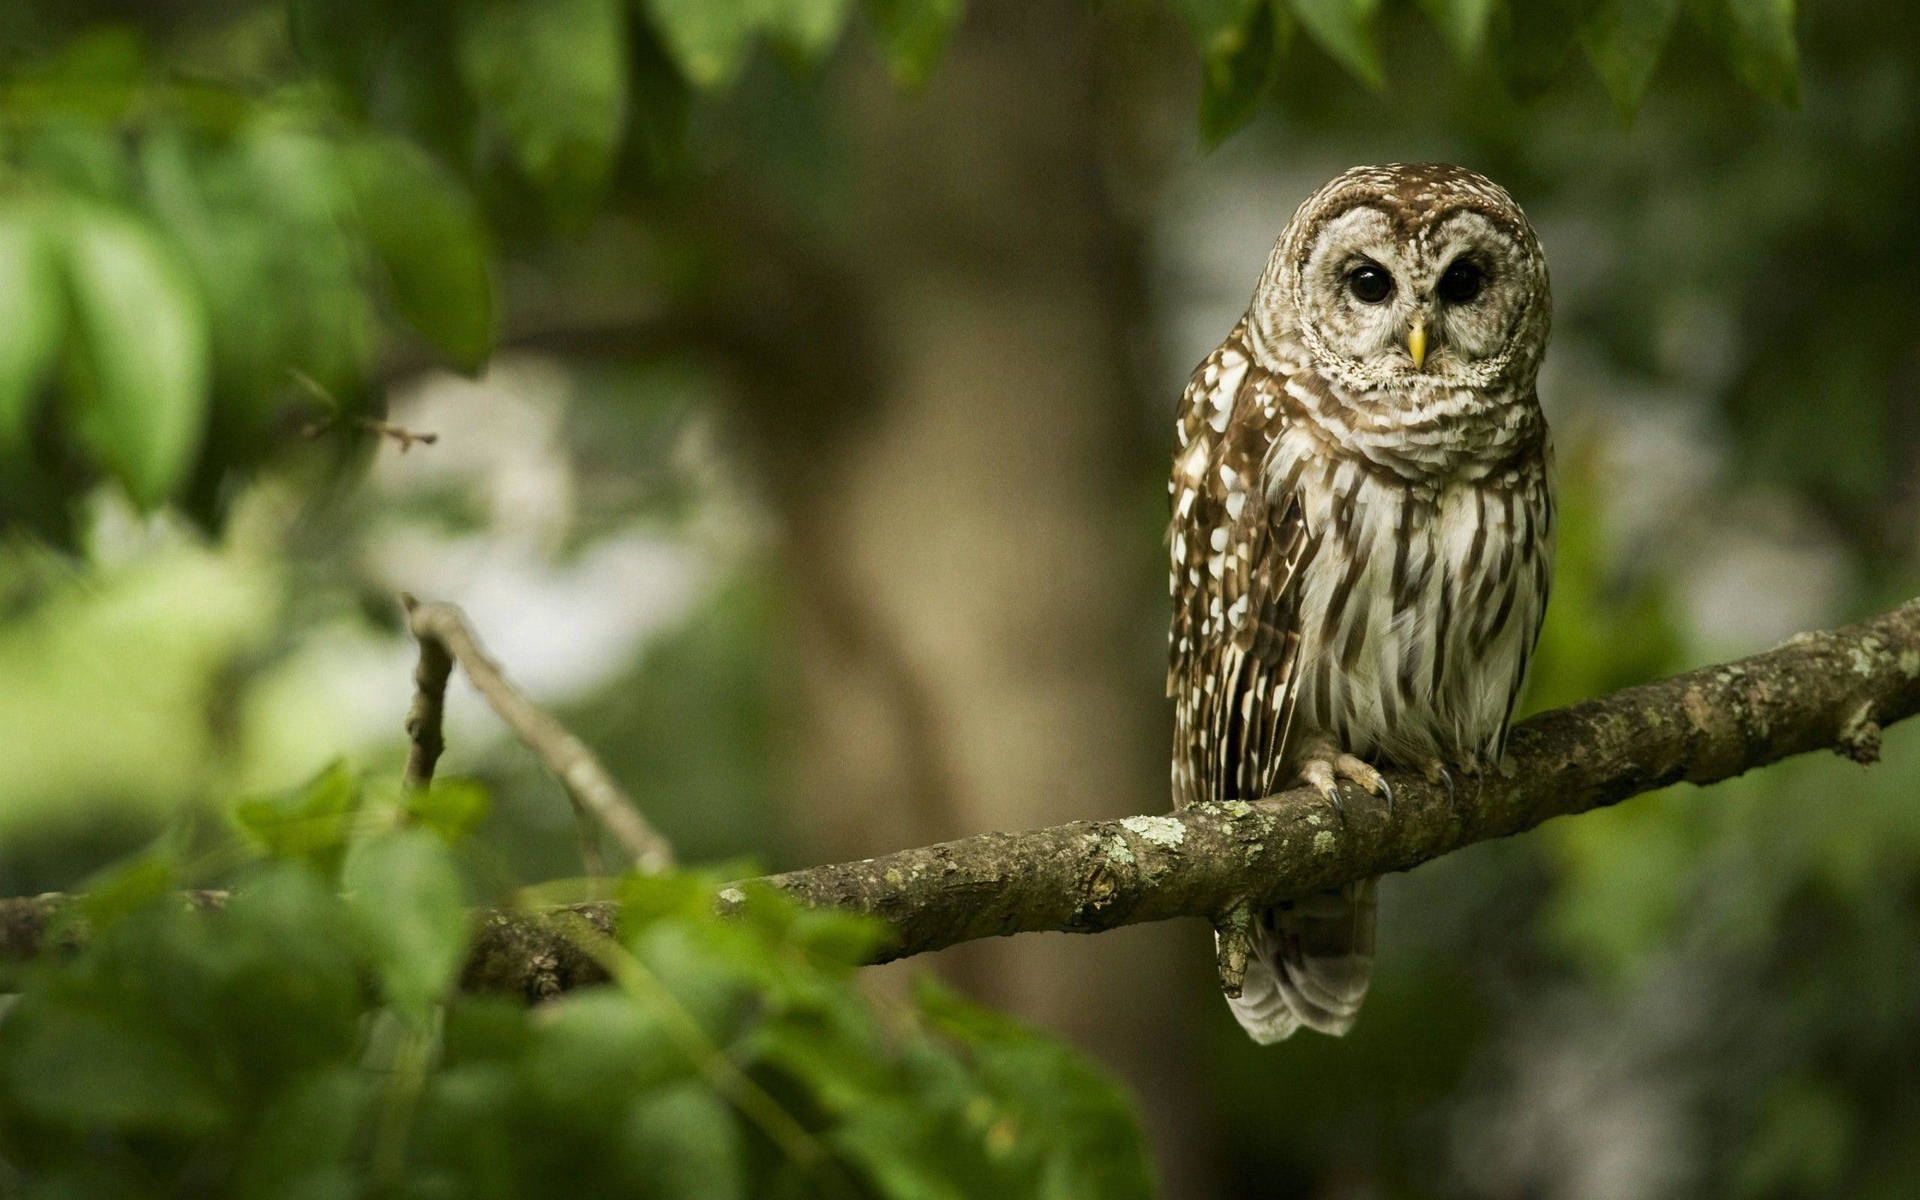 Cute Owl On Tree Branch